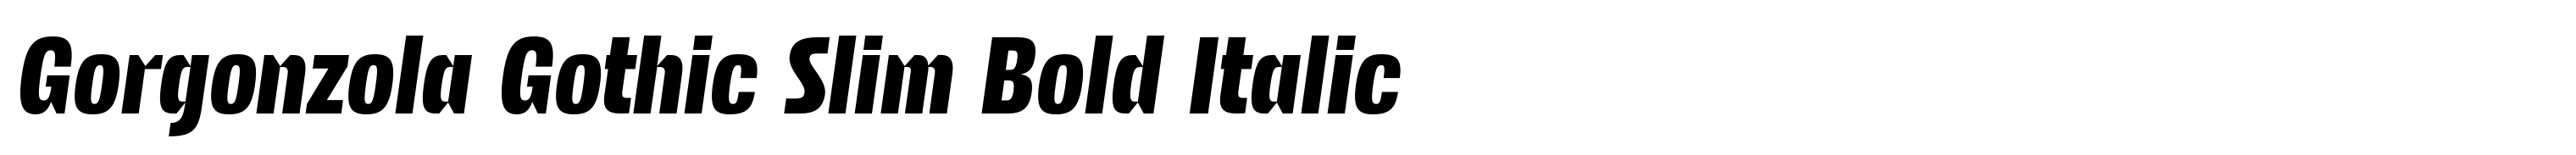 Gorgonzola Gothic Slim Bold Italic